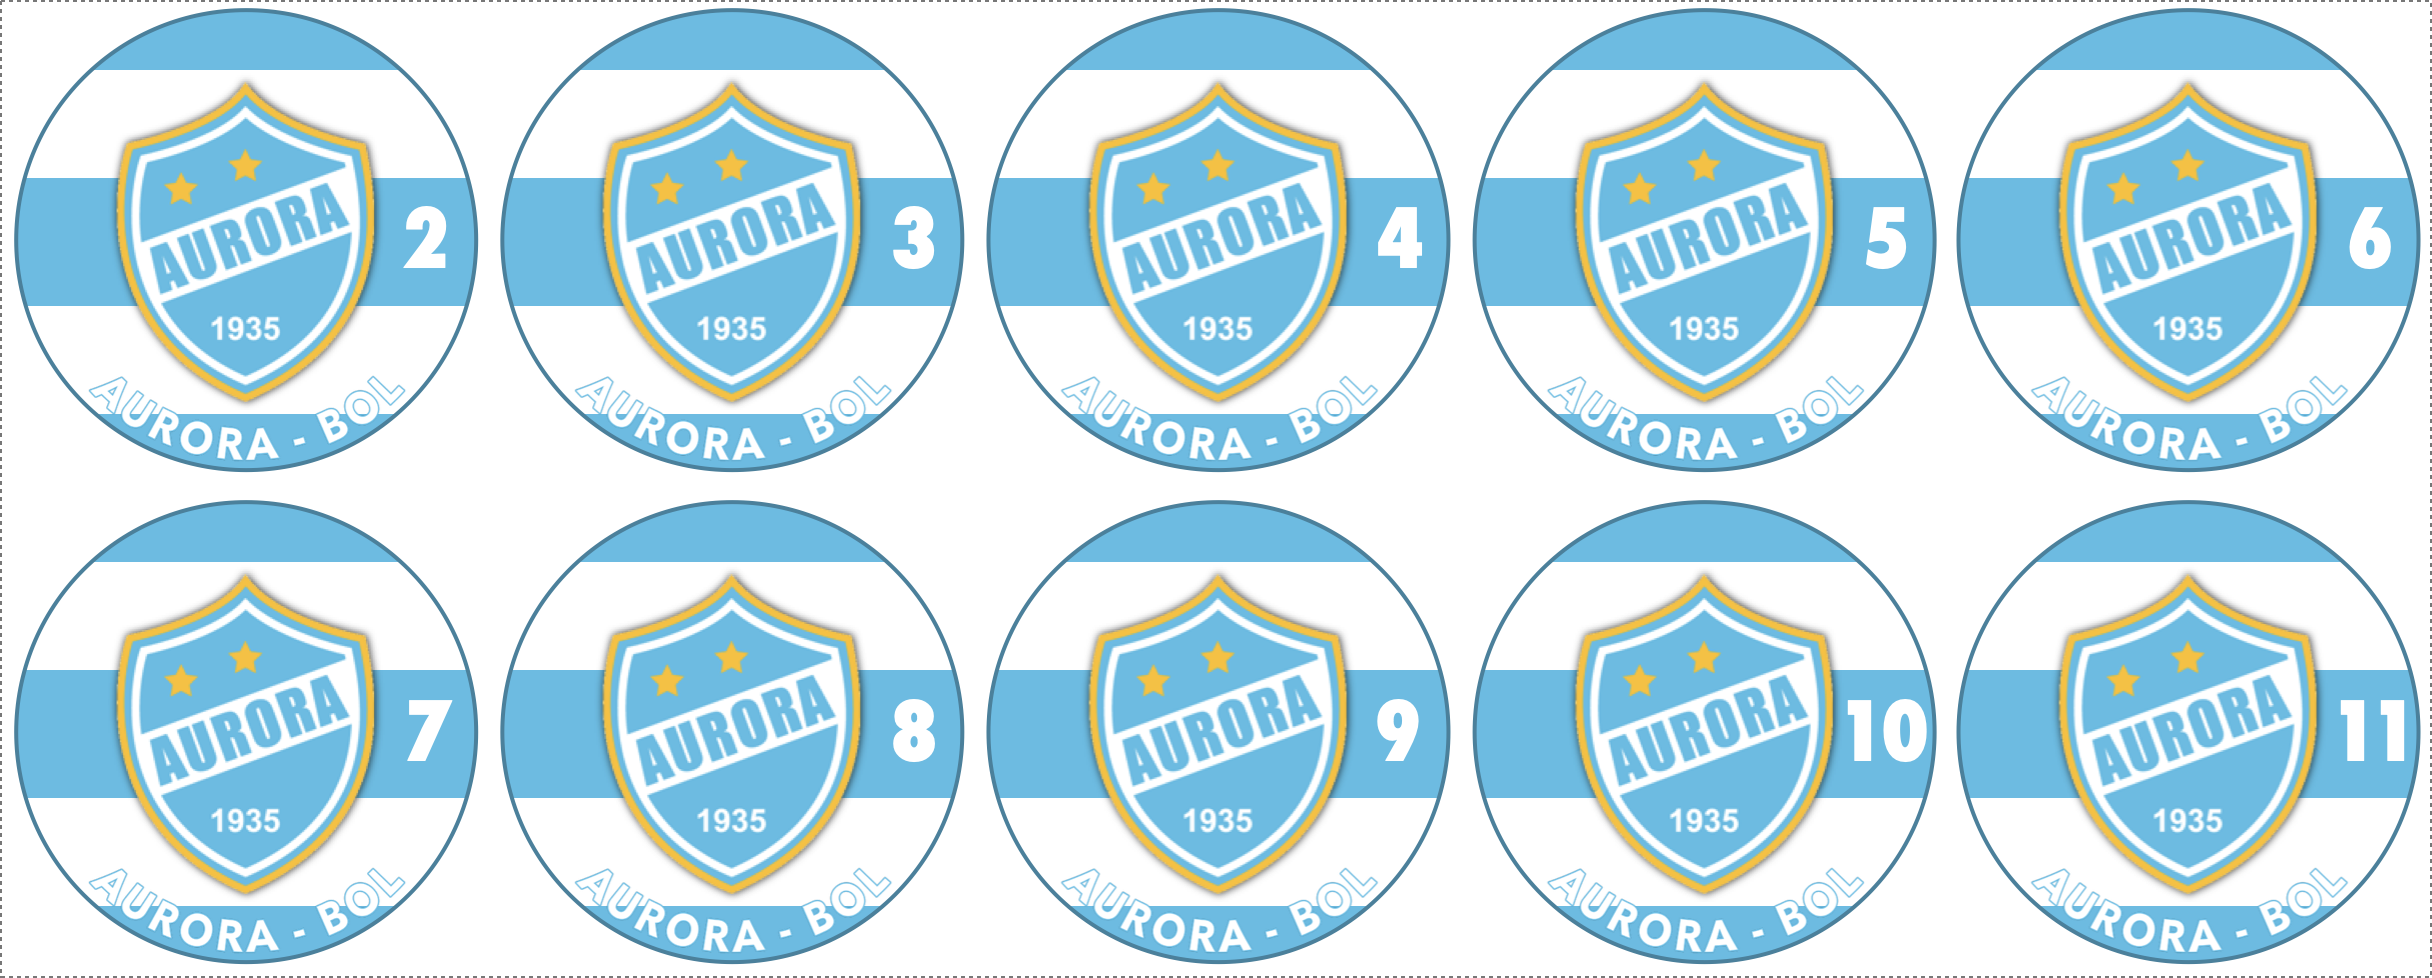 García Ágreda  Football logo, Club, San lorenzo